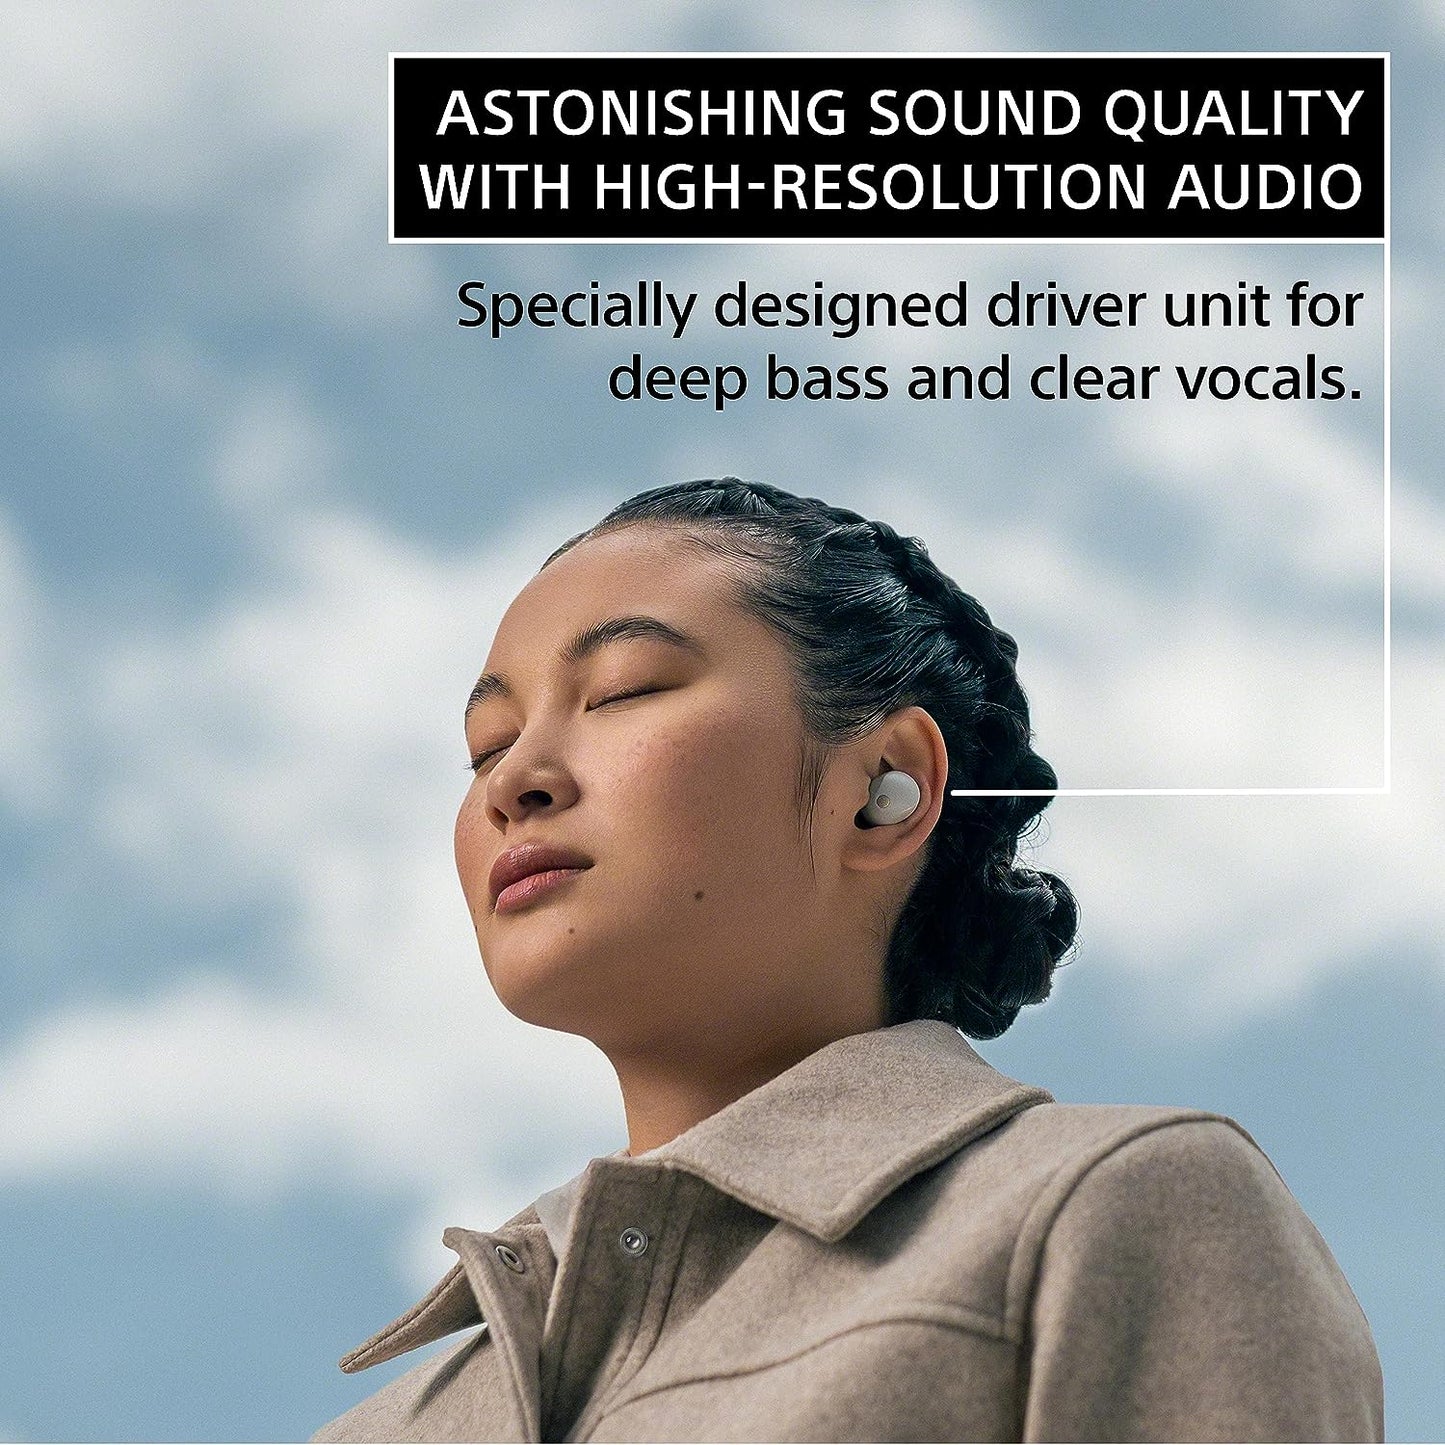 SONY WF-1000MX5 True Wireless Earphone Noise Canceling IPX4 8-Hrs Battery Life Black Silver